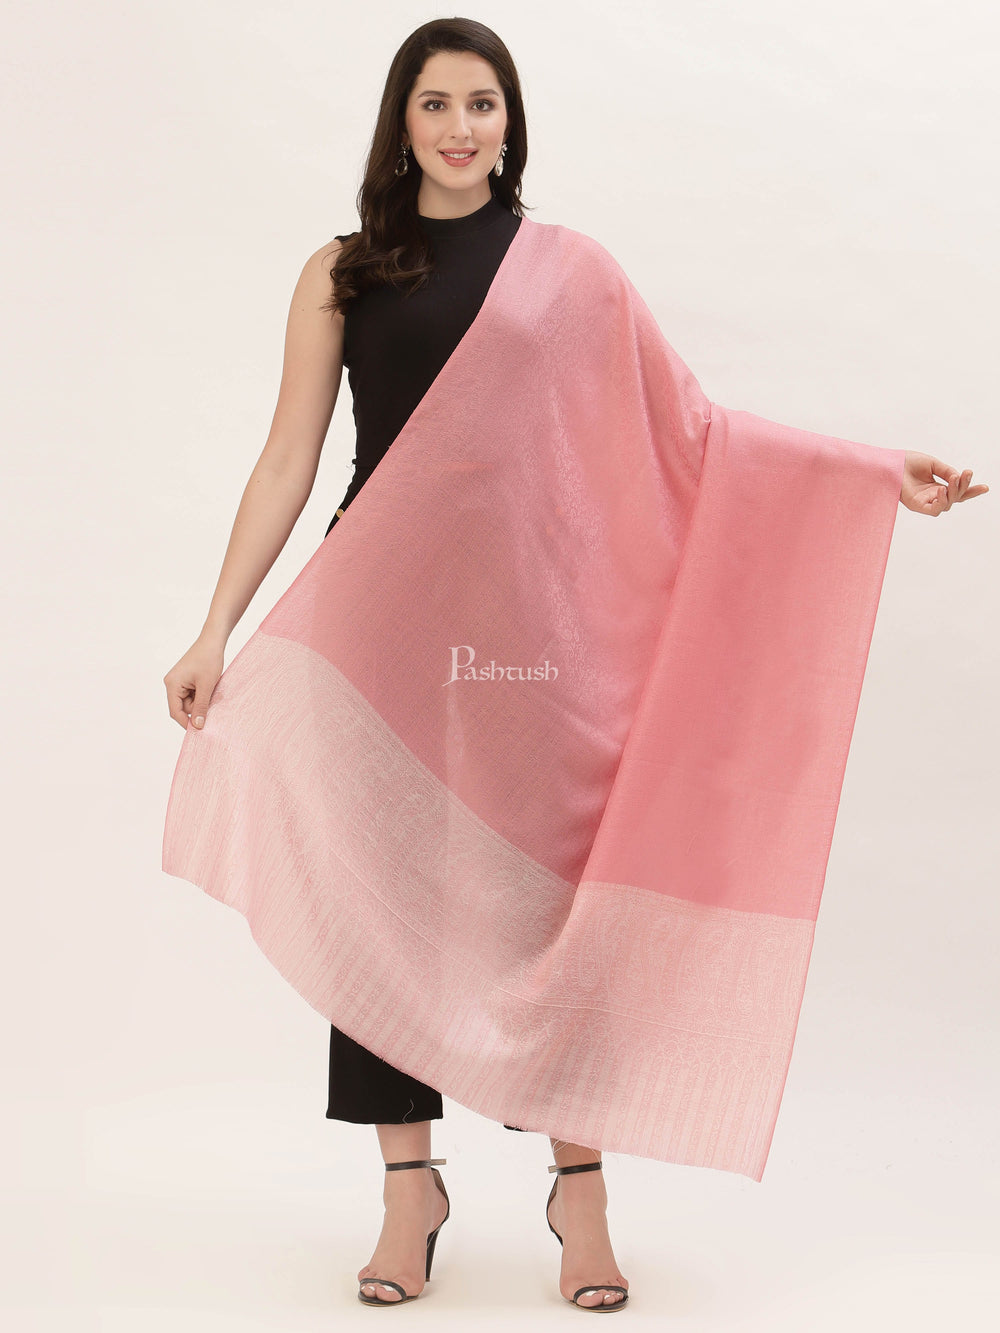 Pashtush India Womens Shawls Pashtush Womens Fine Wool Shawl, Pink